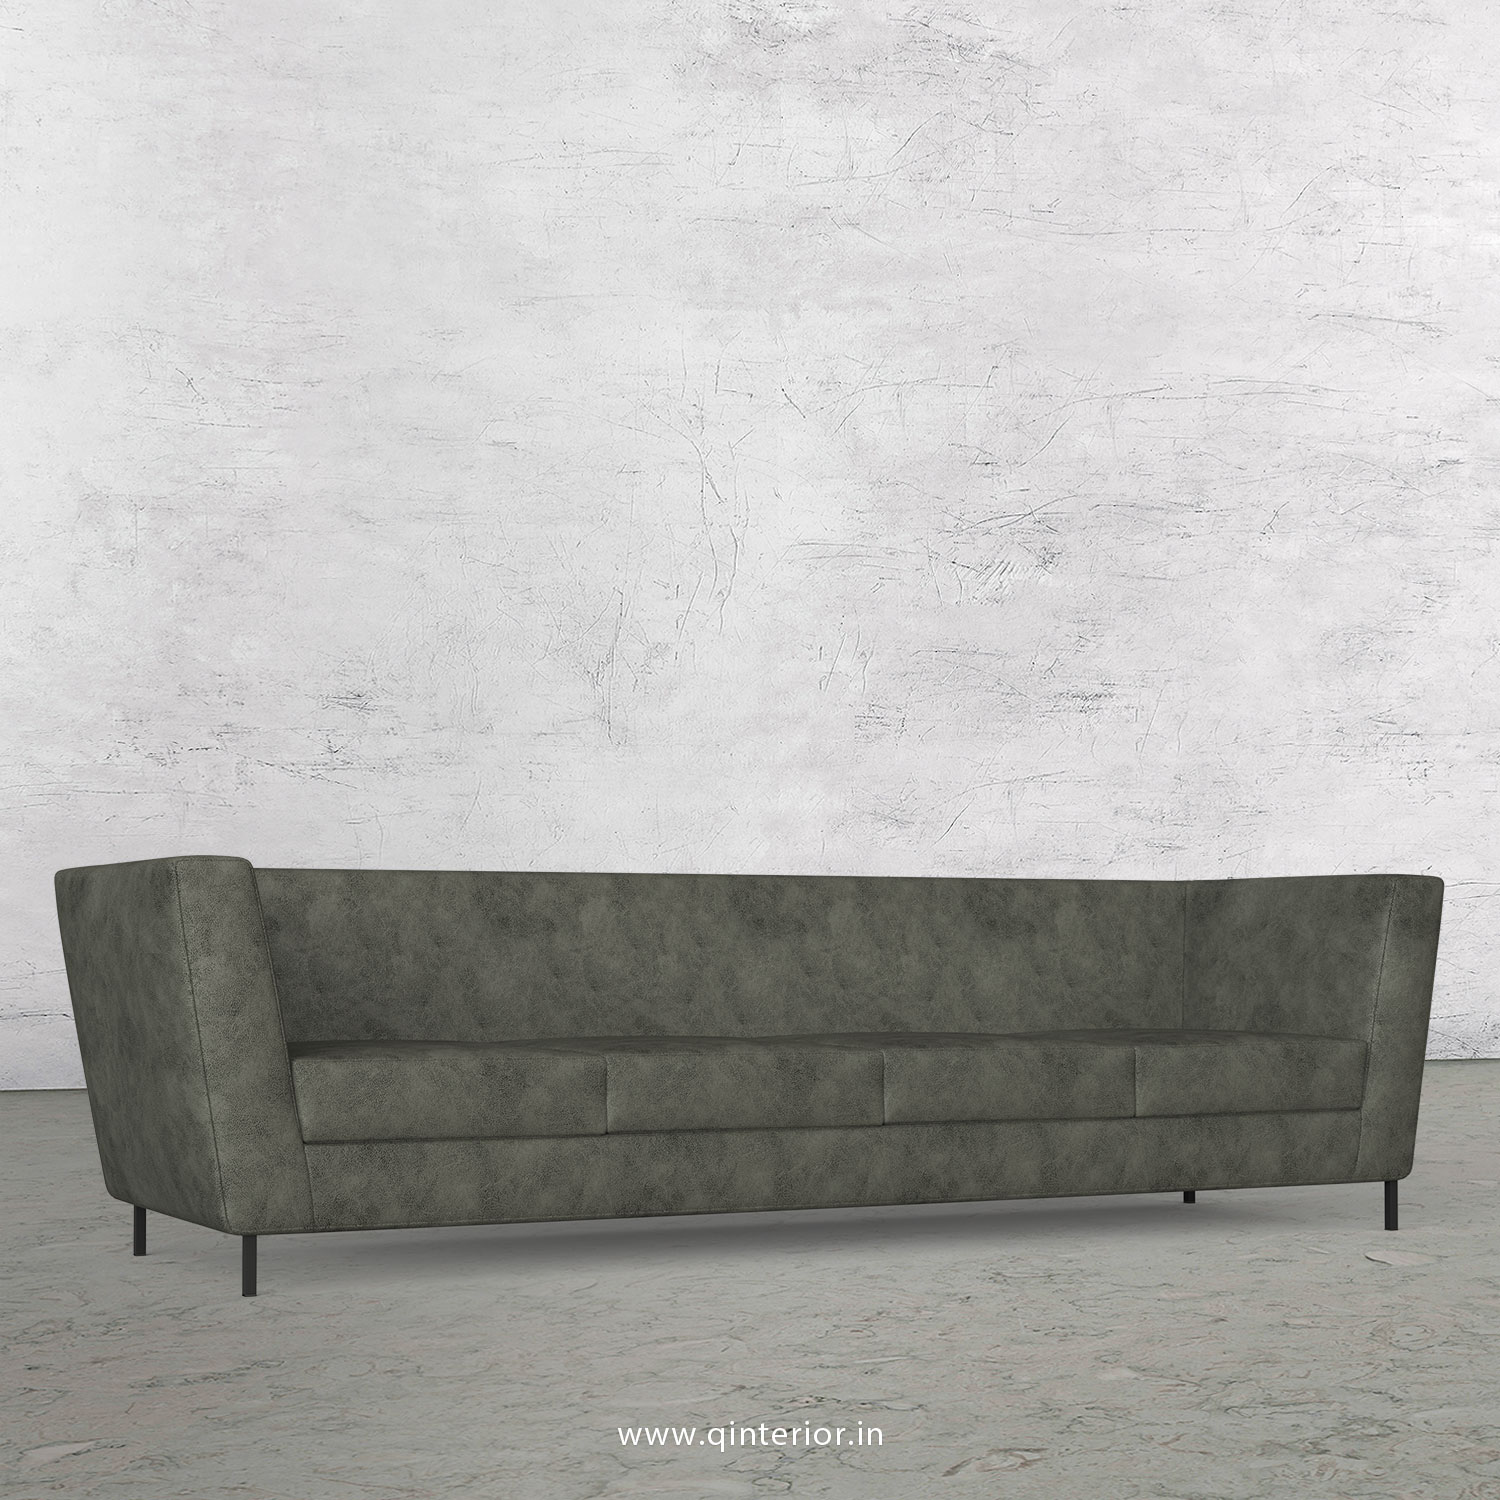 GLORIA 4 Seater Sofa in Fab Leather Fabric - SFA018 FL07